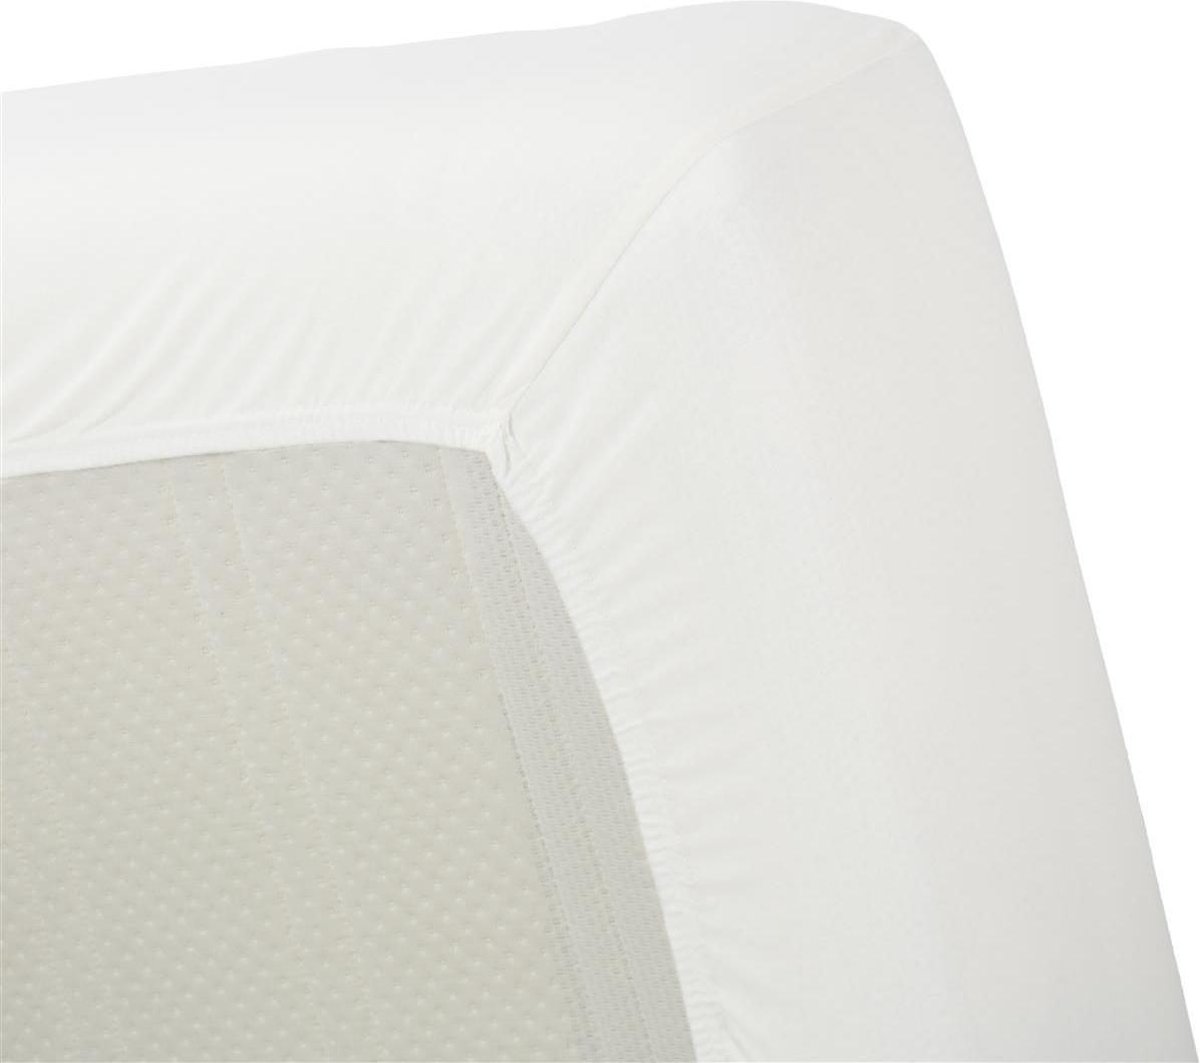 Uitstekende Jersey Hoeslaken Wit | 120x220 | Heerlijk Zacht En Soepel | Duurzame Kwaliteit